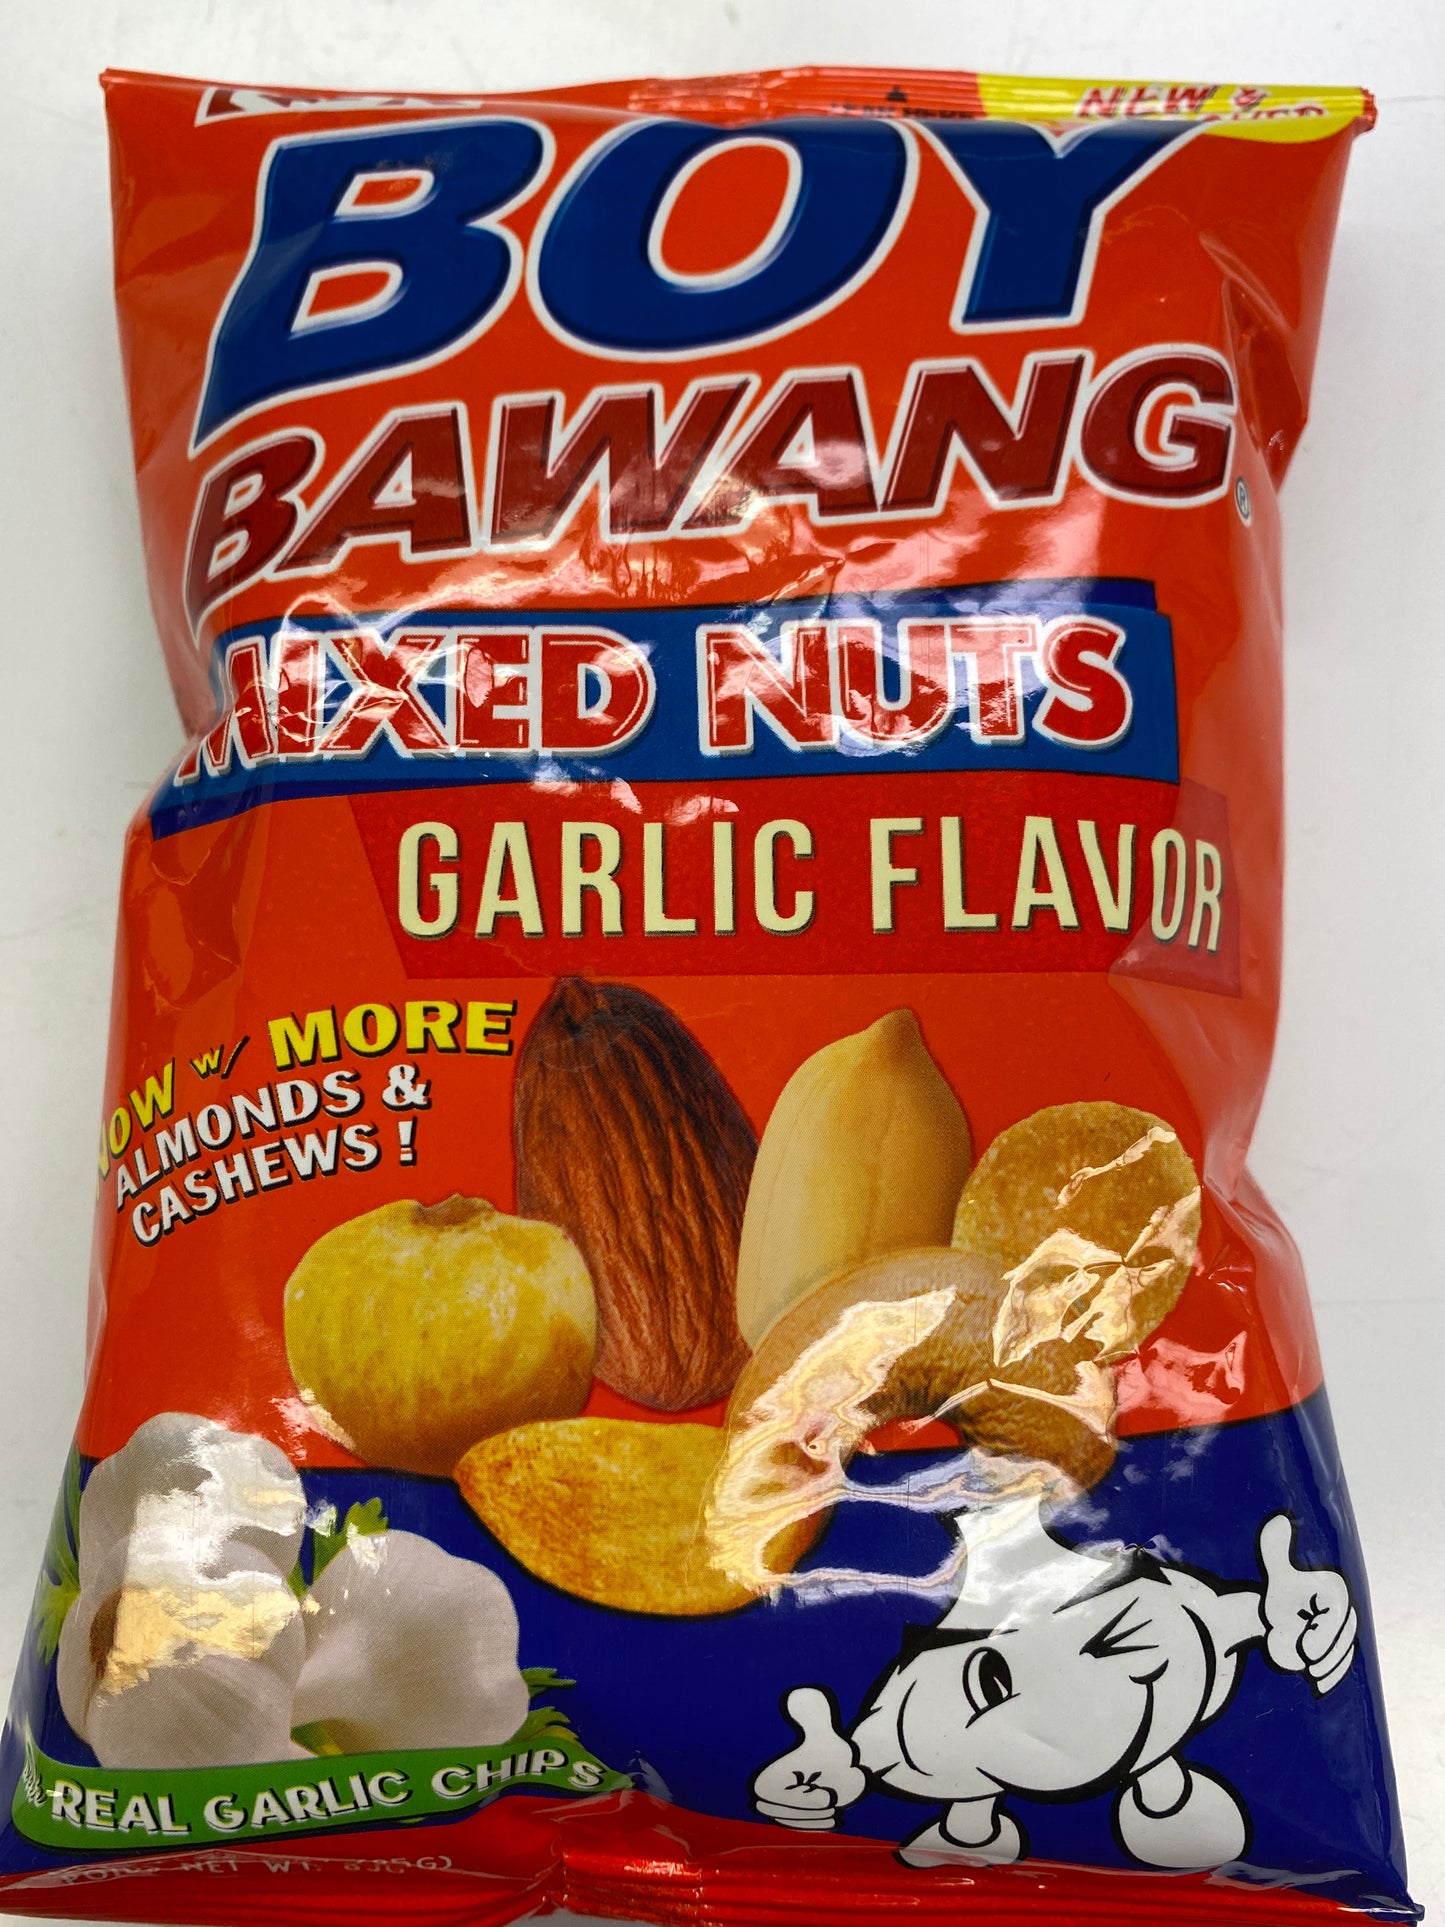 Boy Bawang Mixed Nuts Garlic Flavor - 85g